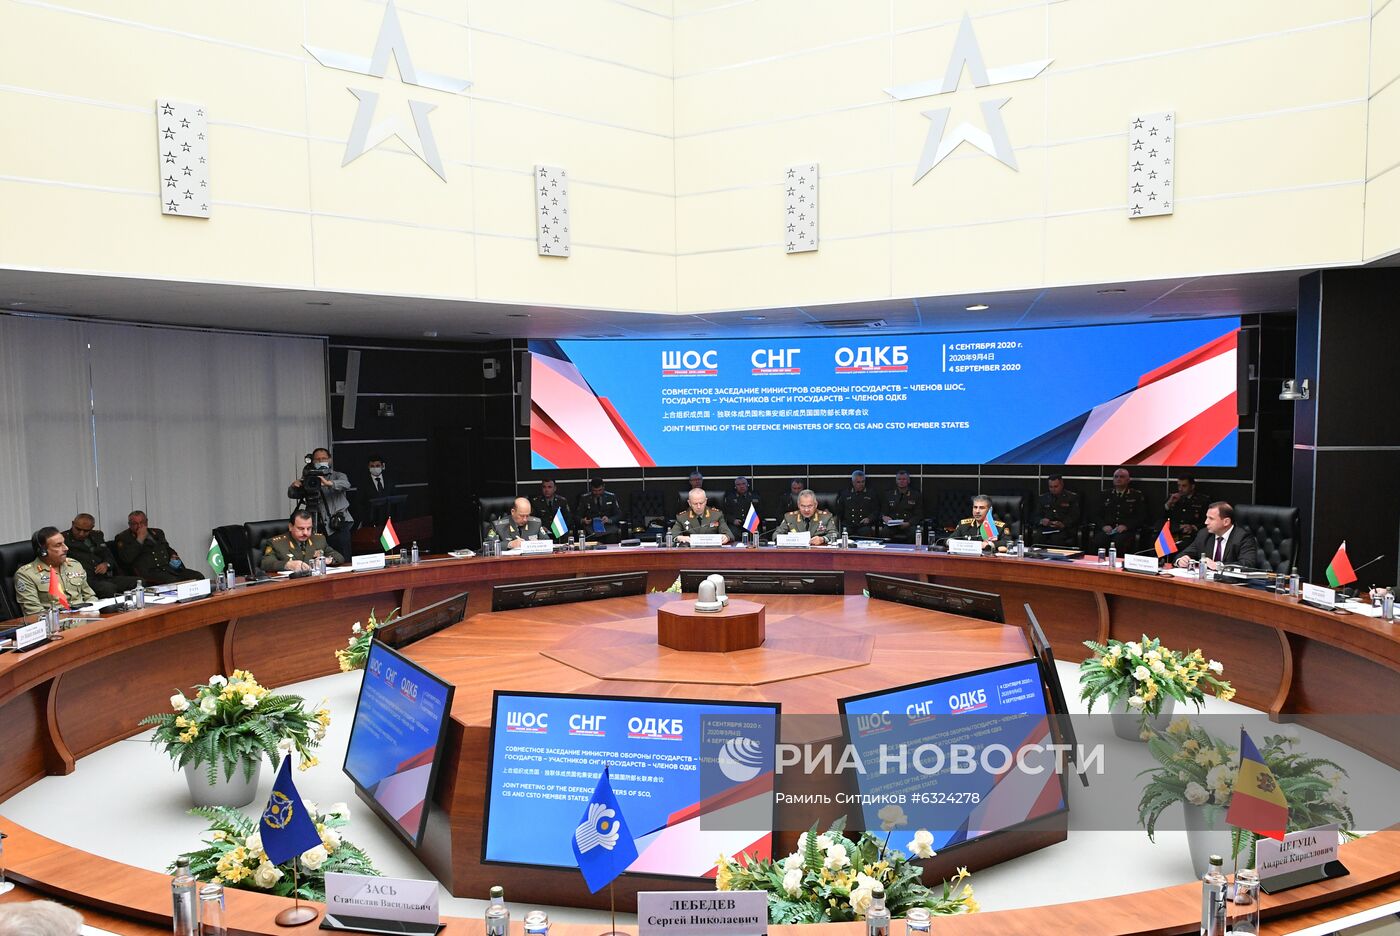 Совместное заседание министров обороны государств – членов ШОС, государств – участников СНГ и государств – членов ОДКБ